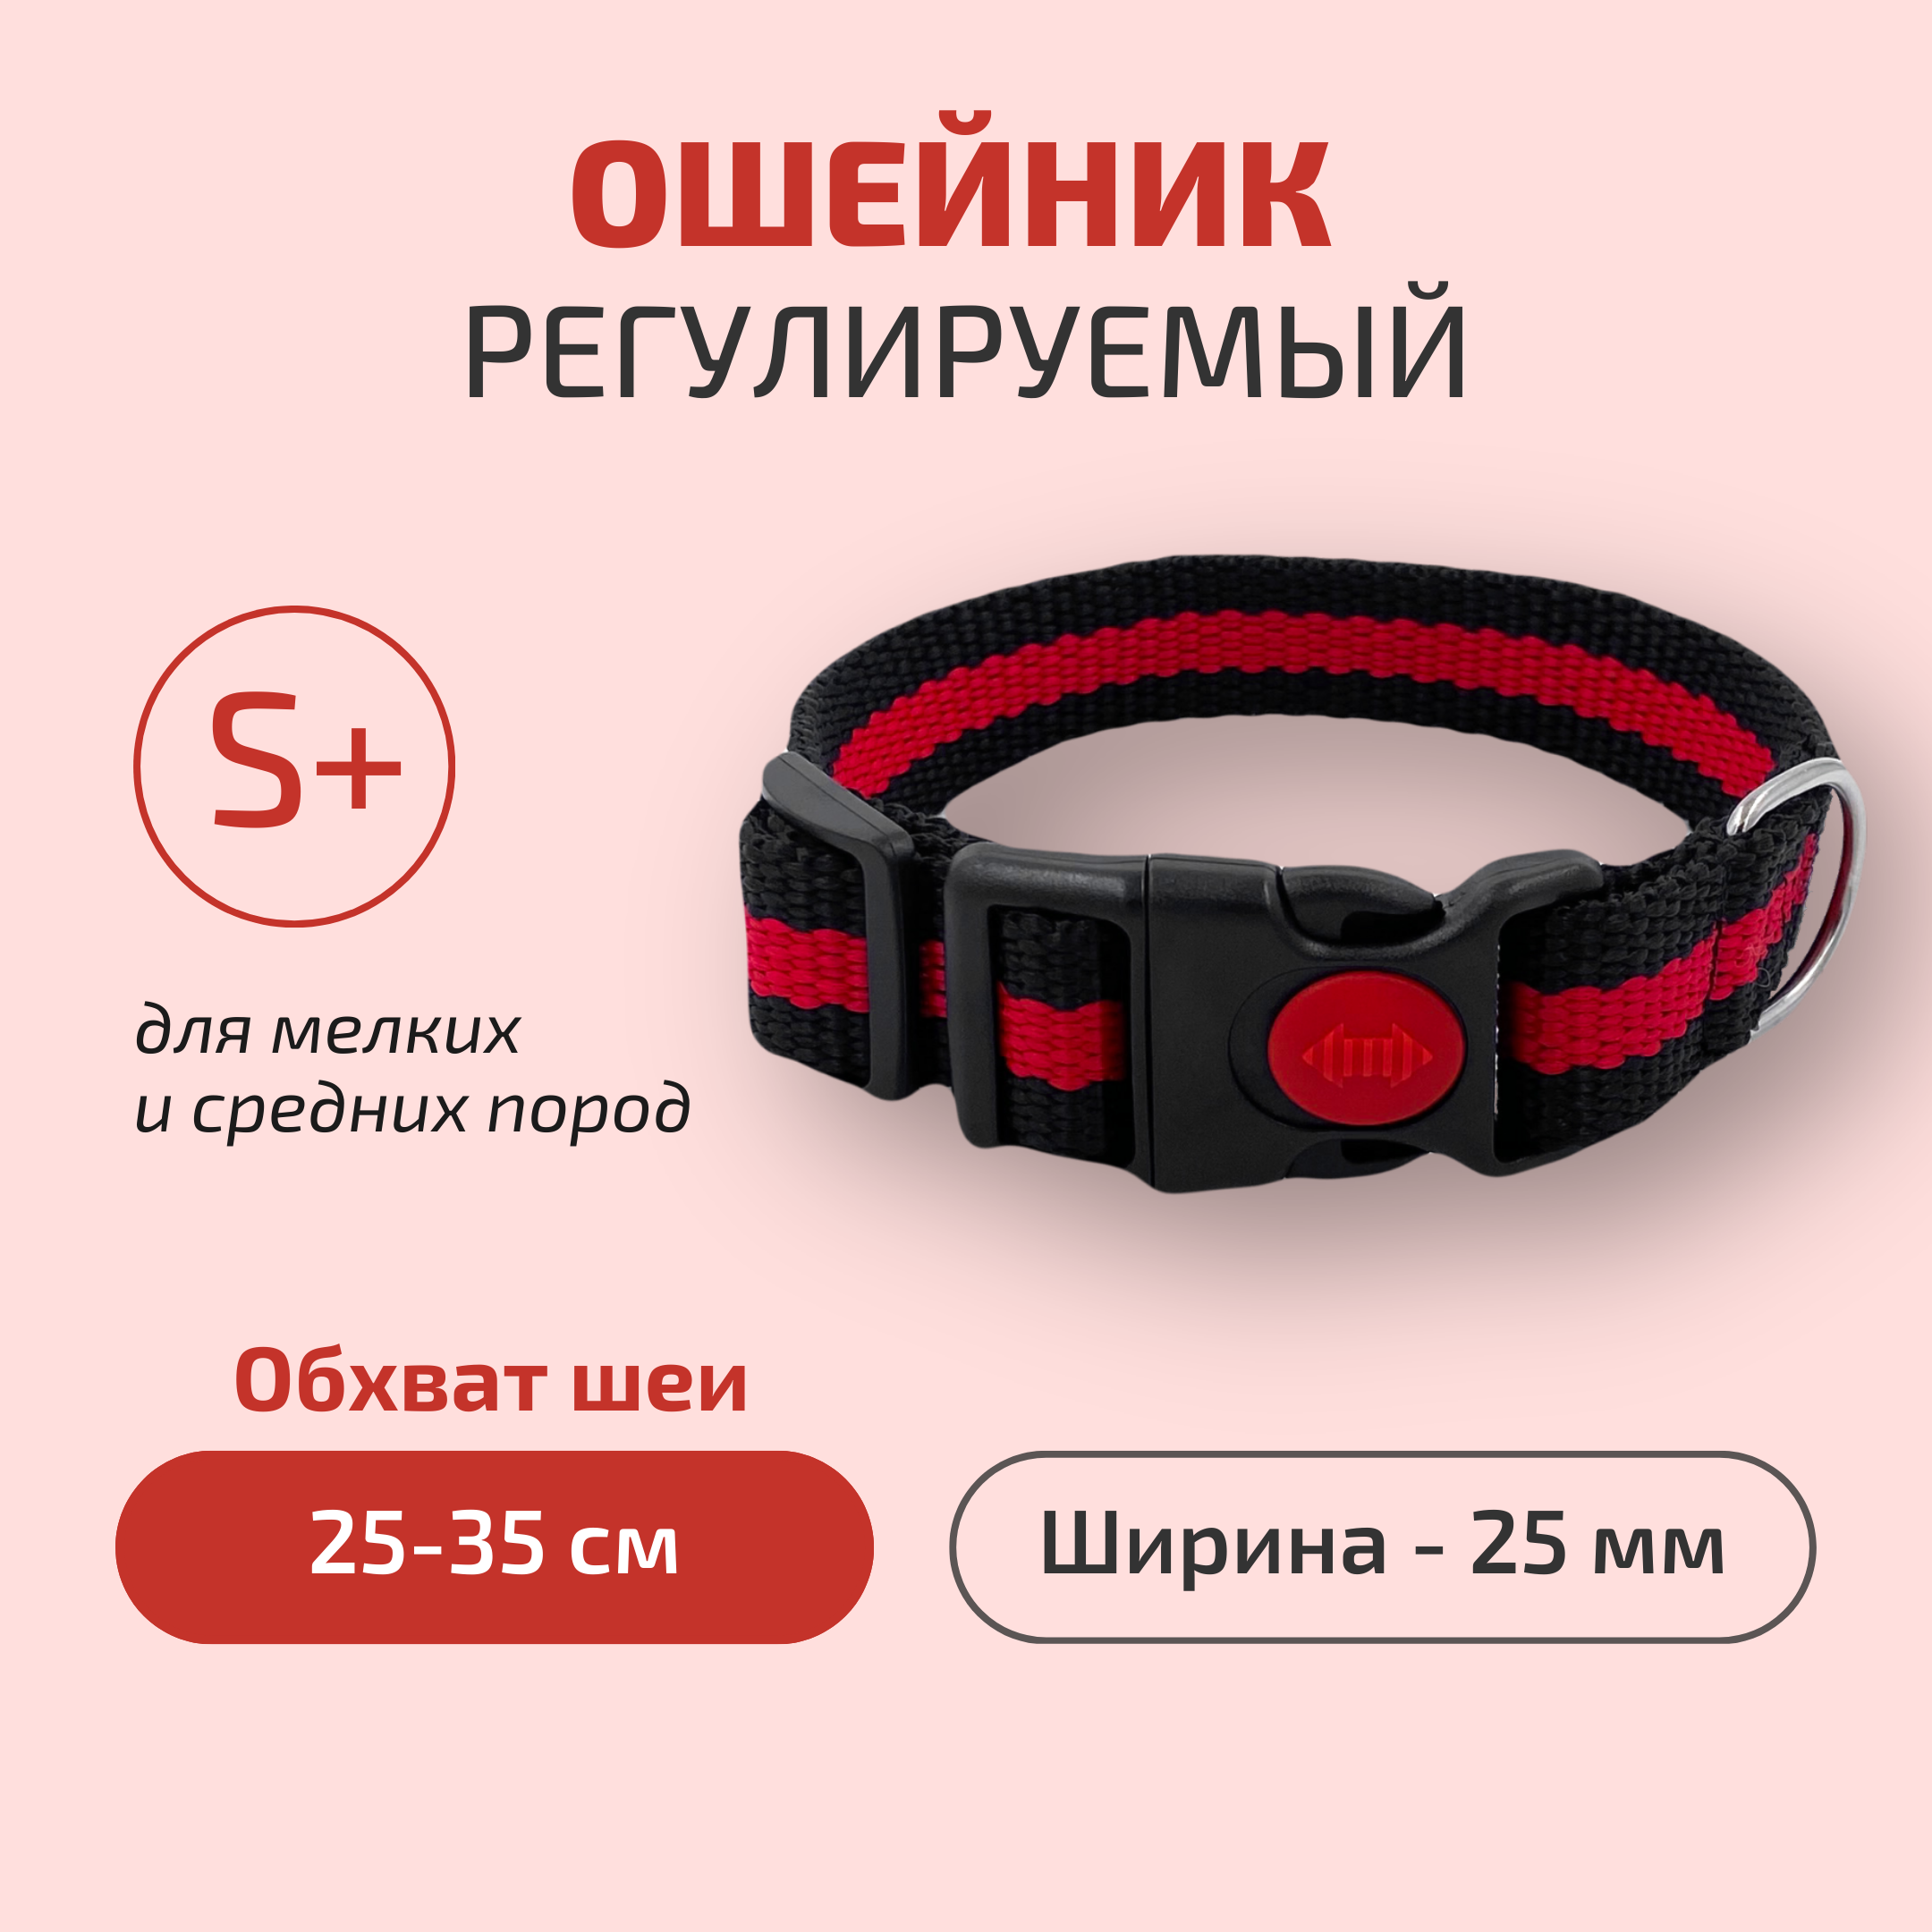 Ошейник для собак Povodki Shop черно-красный, ширина 25 мм, обхват шеи 25-36 см